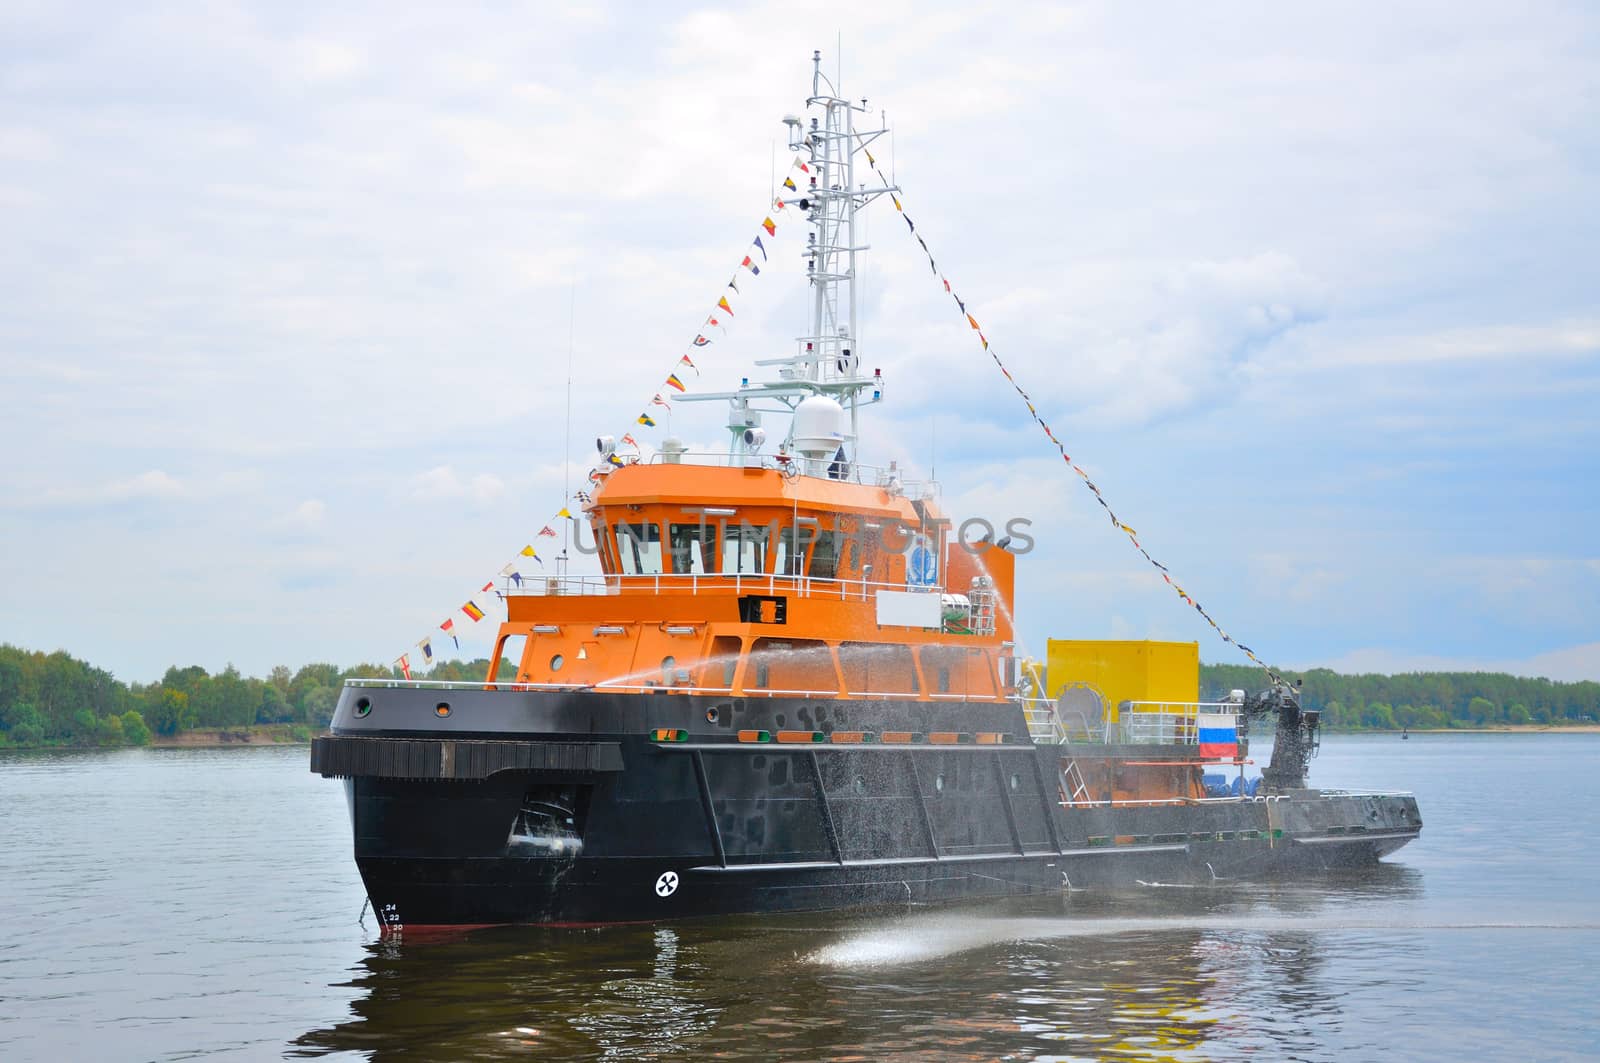 Black-orange ship in Volga river, Yaroslavl, Russia